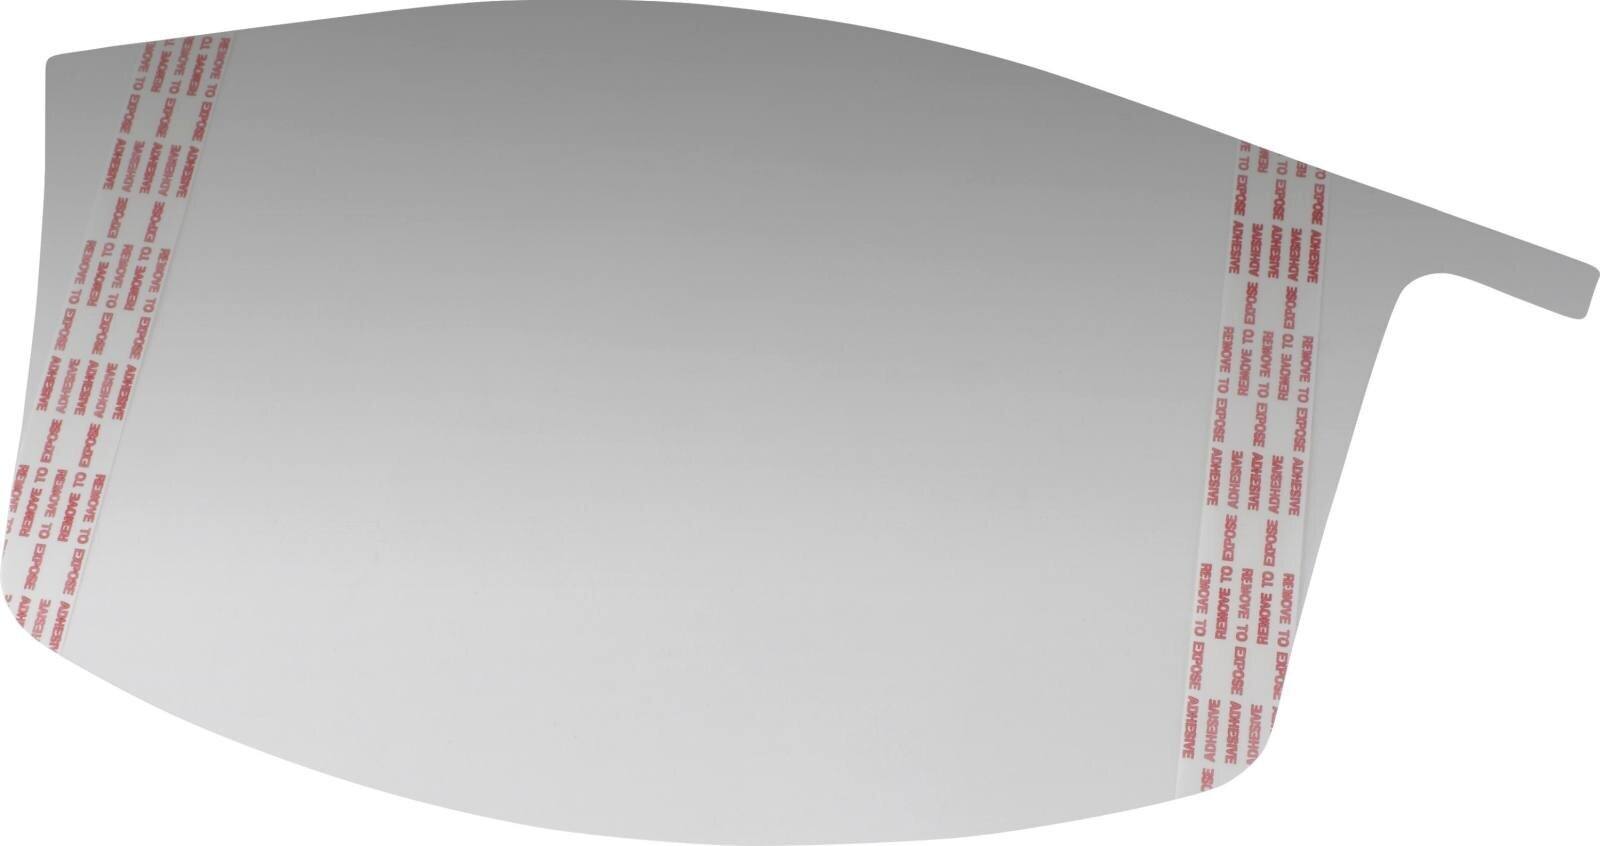 3M Versaflo visor protection films M928 for M series